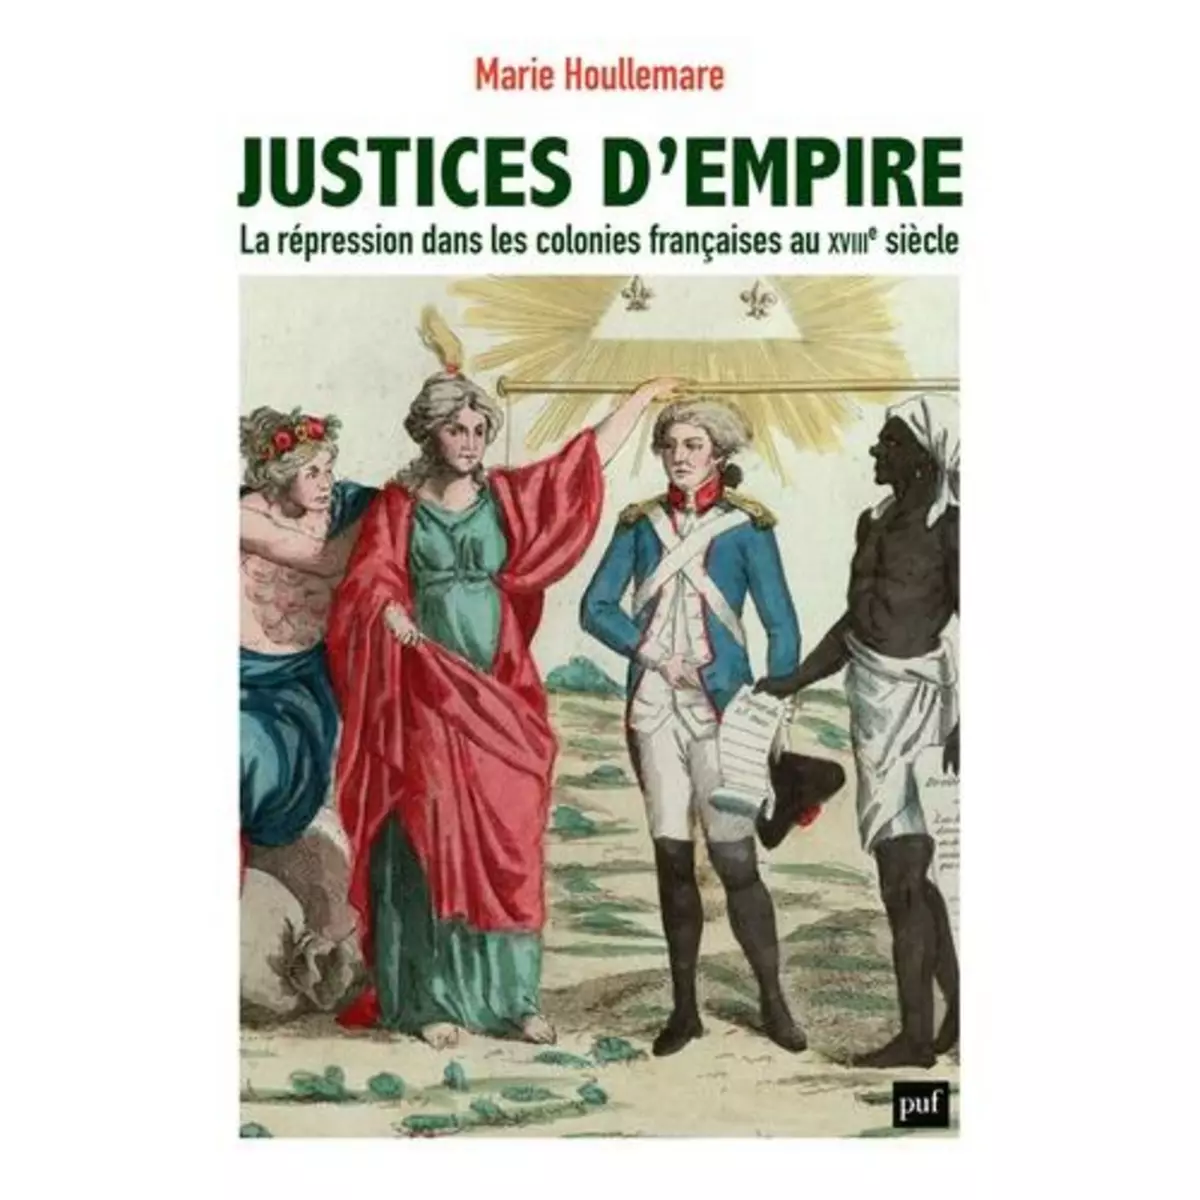  JUSTICES D'EMPIRE. LA REPRESSION DANS LES COLONIES FRANCAISES AU XVIIIE SIECLE, Houllemare Marie